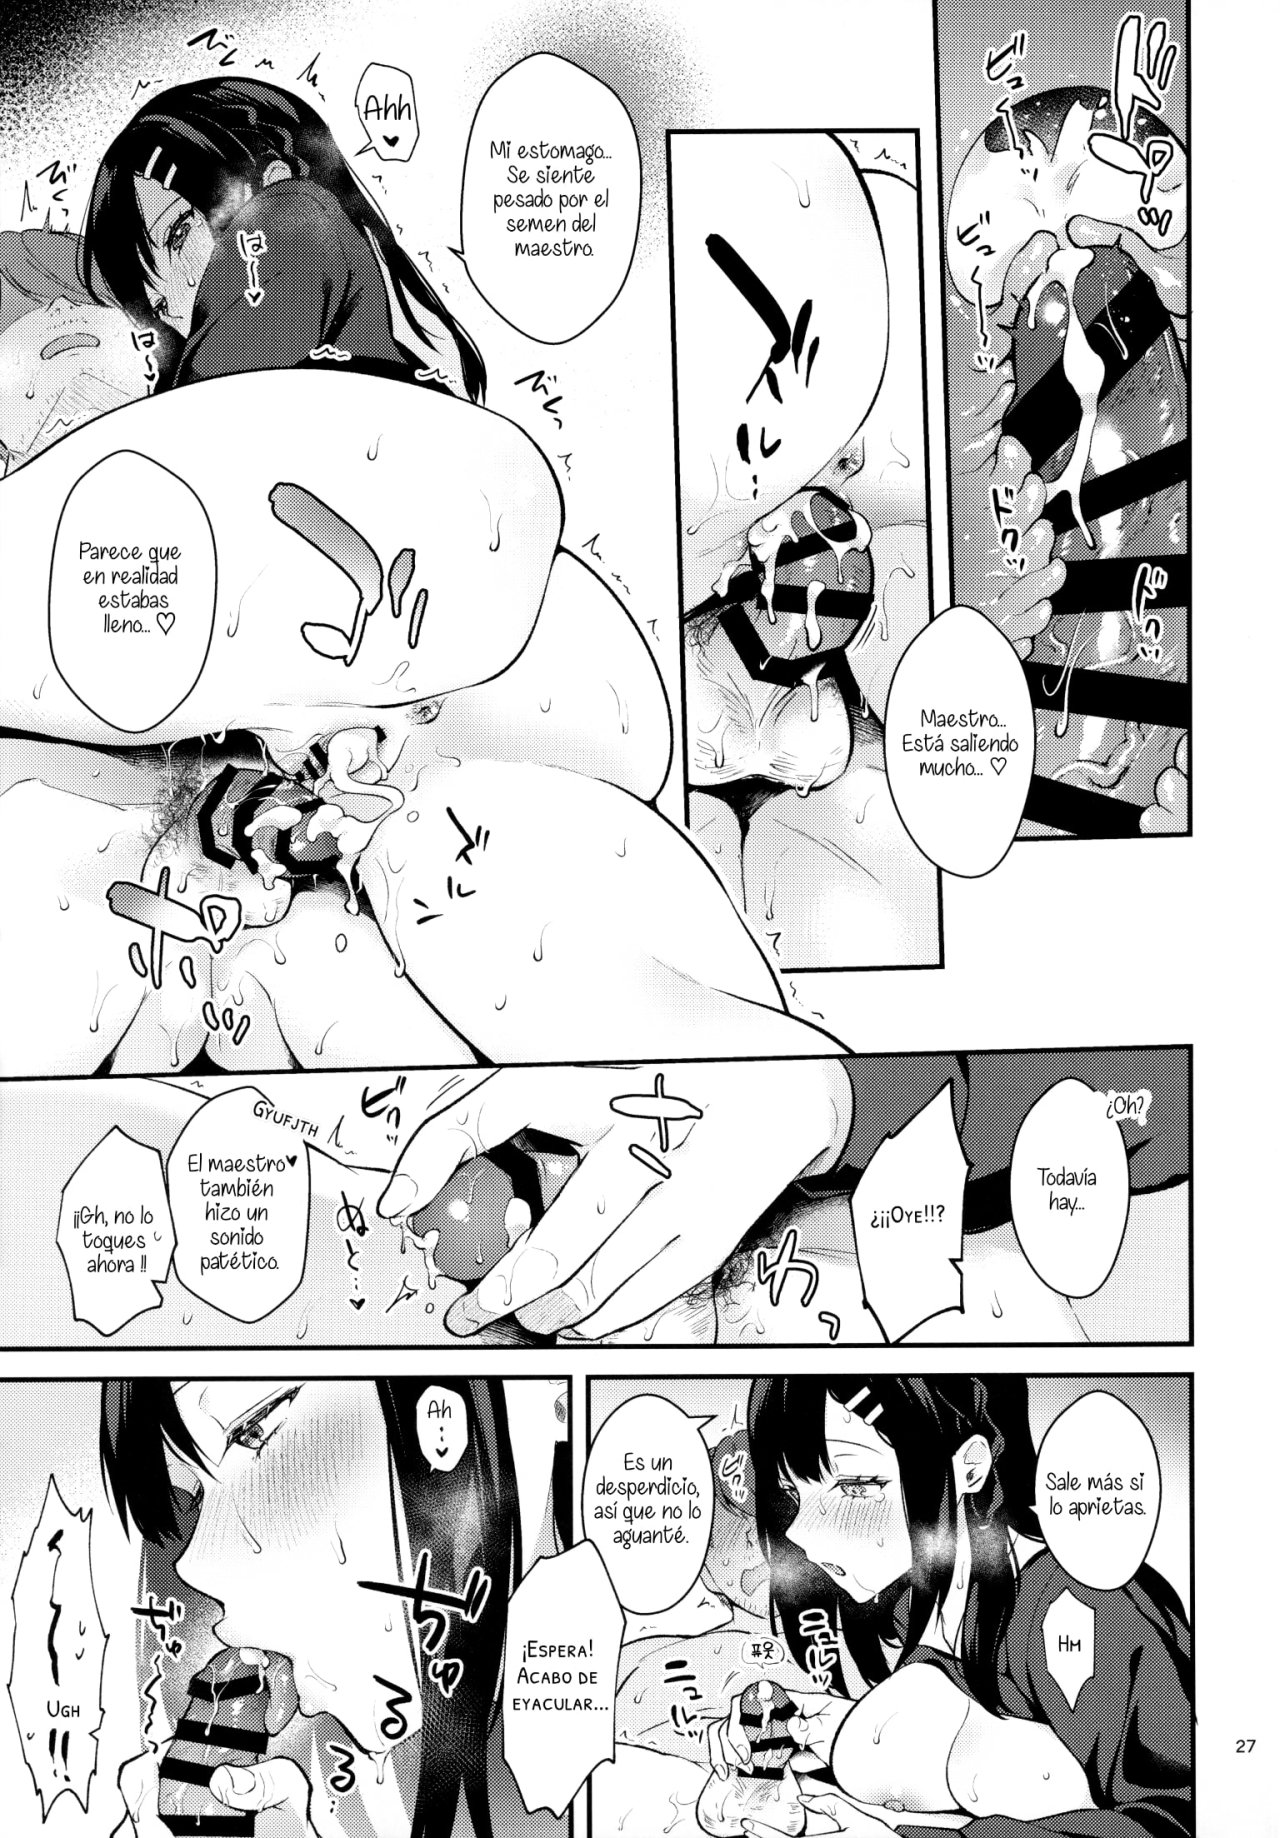 Sunshower-JK Miyako no Valentine Manga 3 - 25